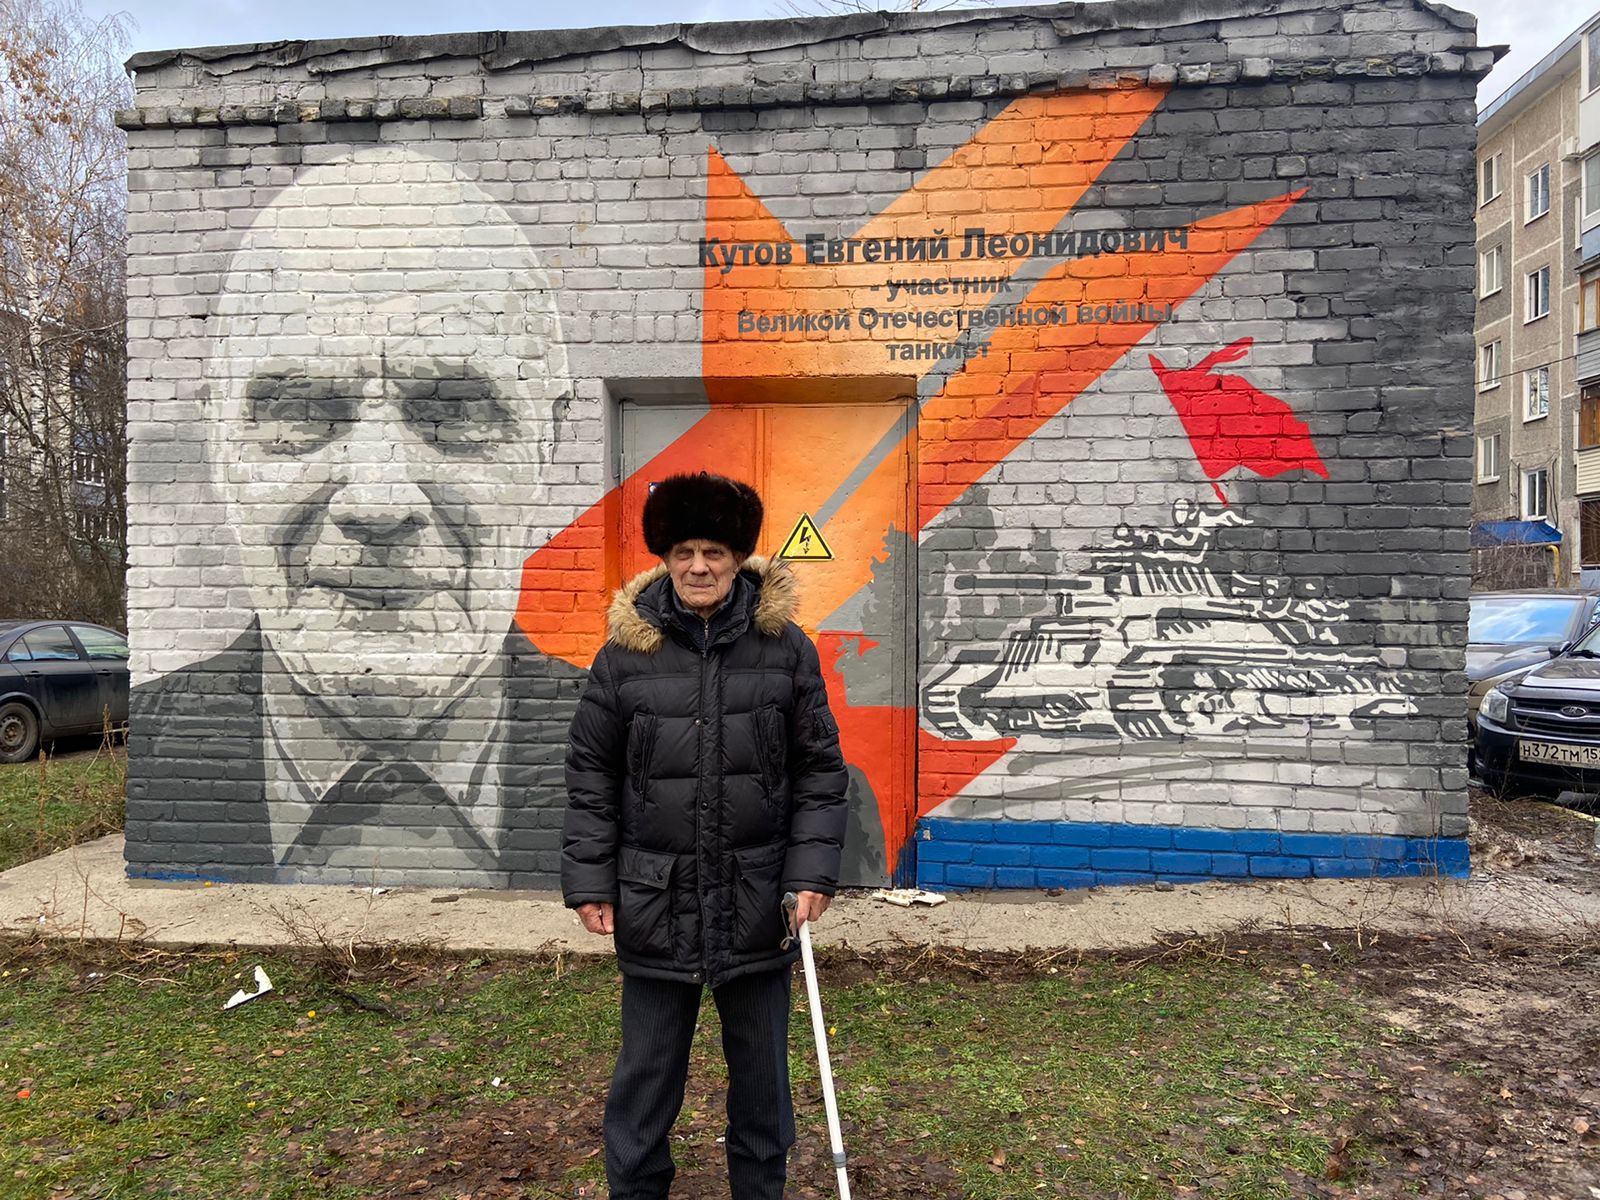 Граффити-портрет участника ВОВ появилось во дворе дома в Сормове - фото 1